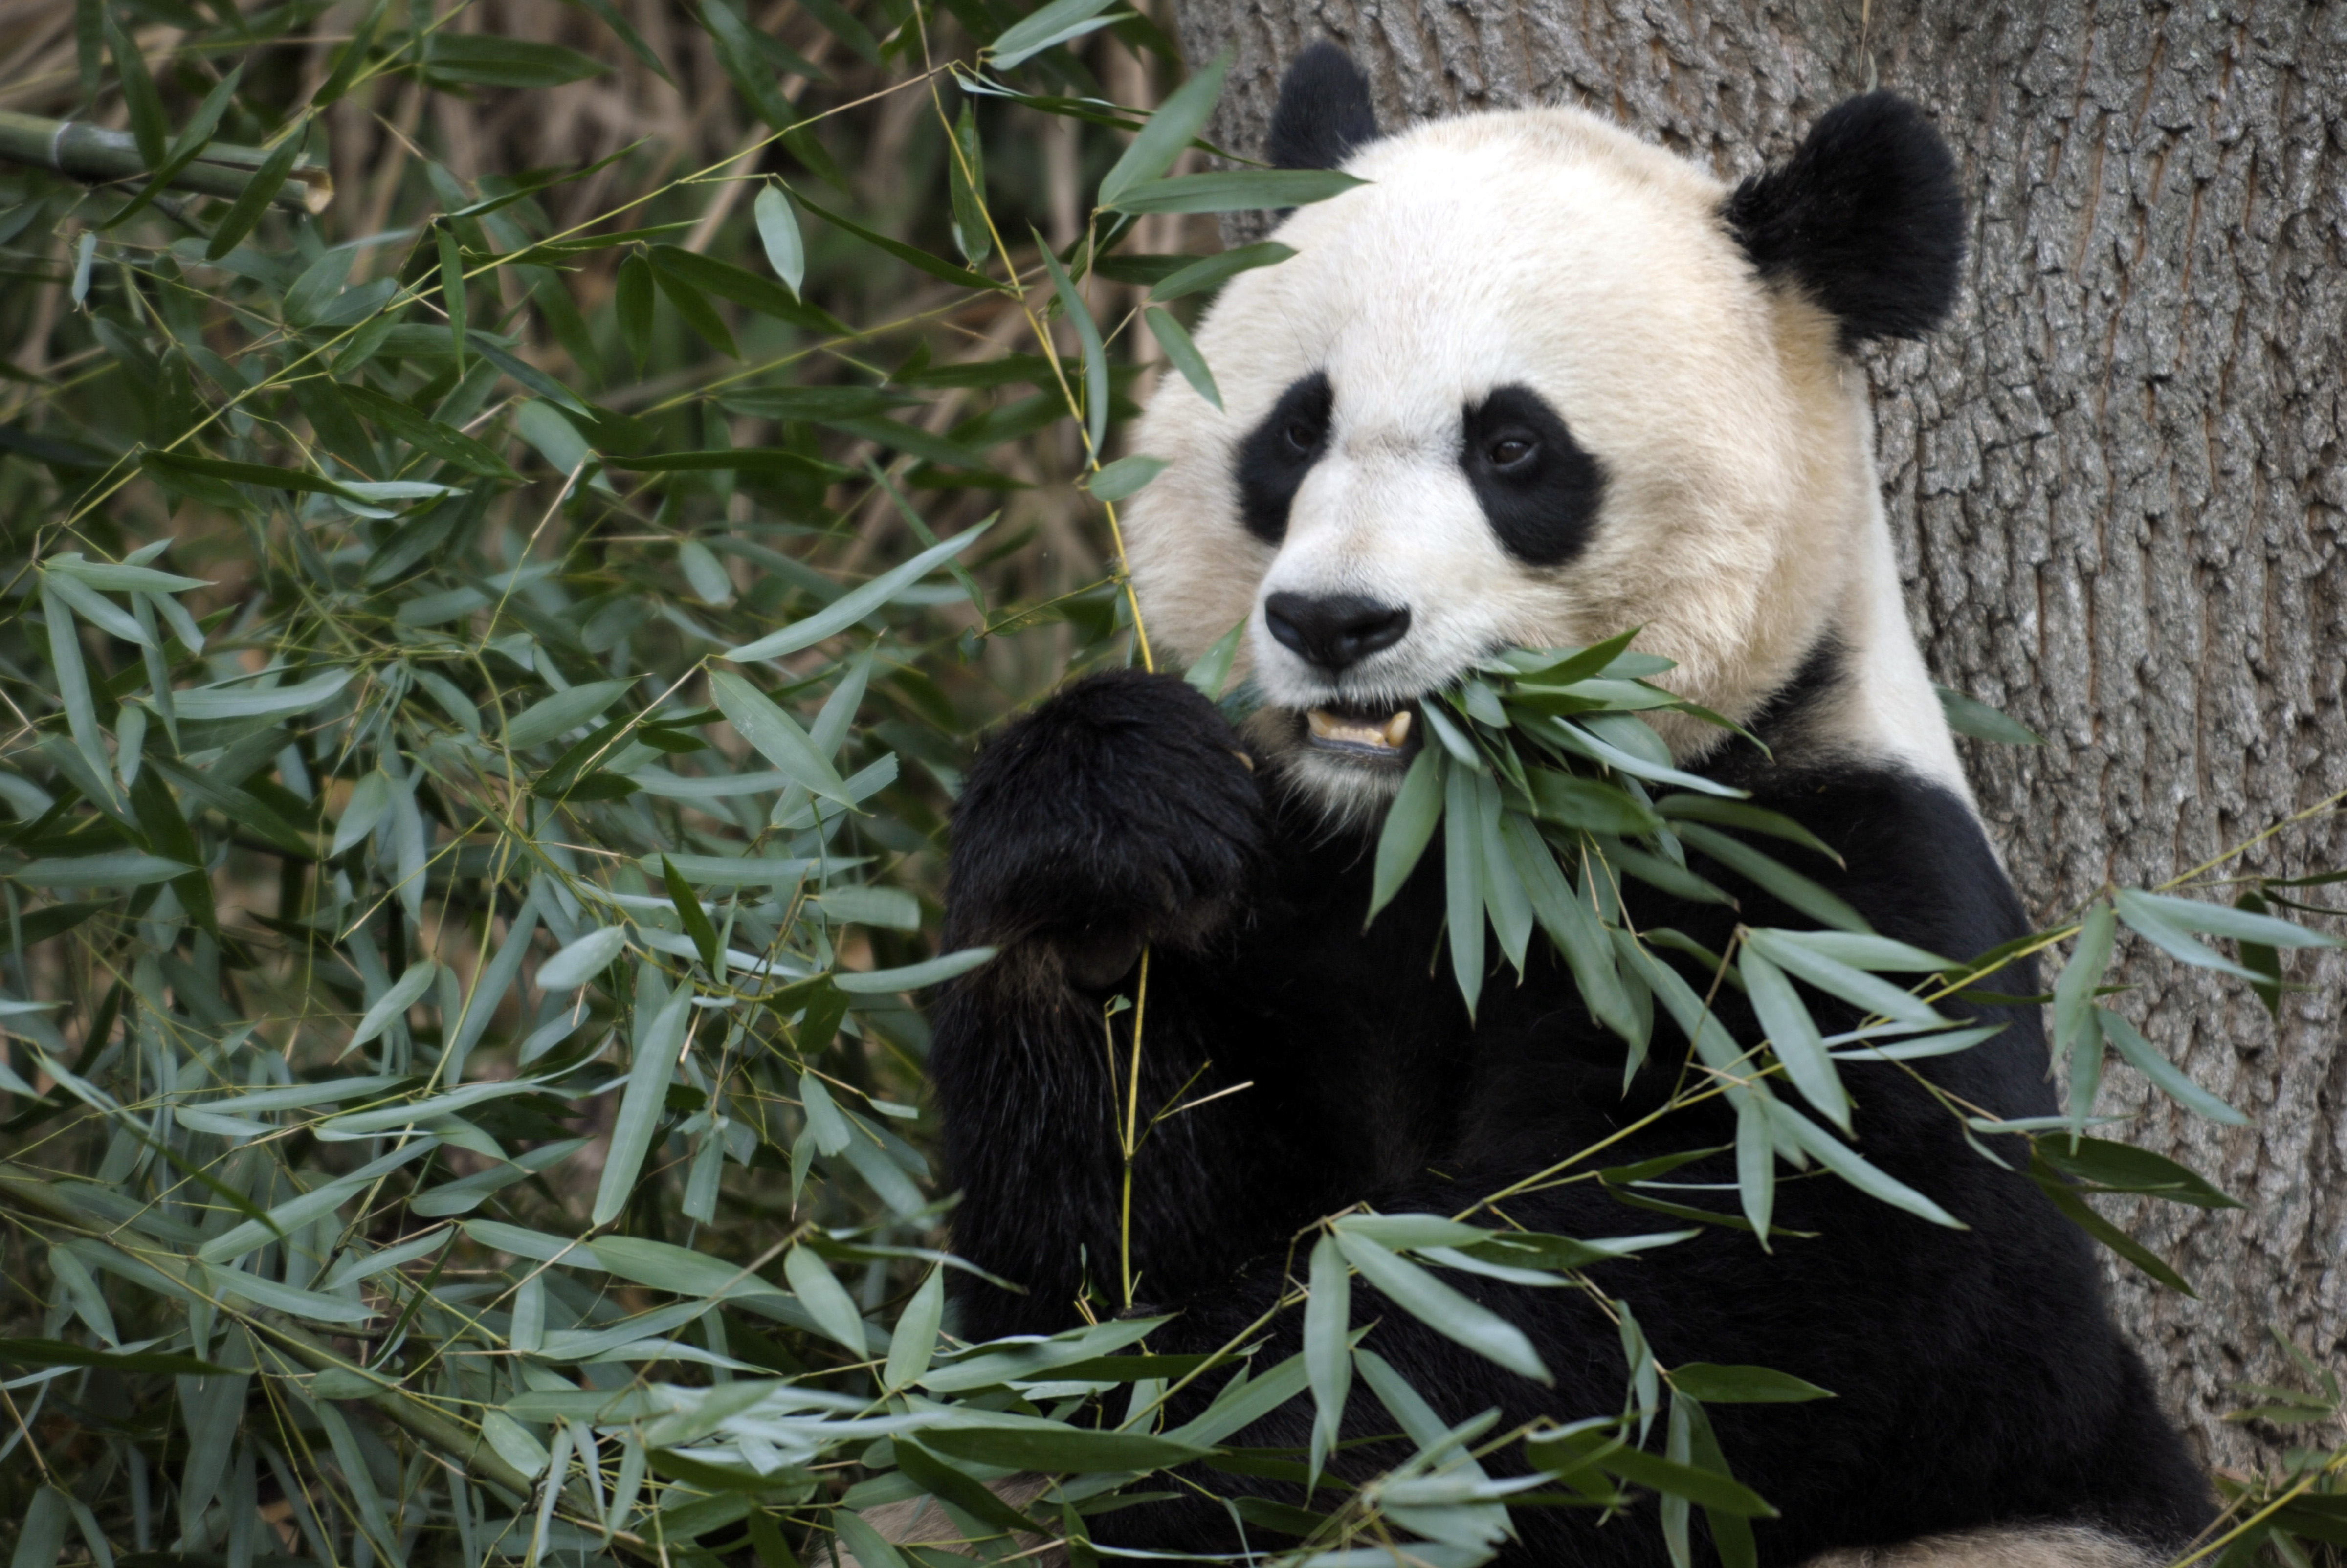 Den 16 september födde Mei Xiang en liten pandaunge som tragiskt nog avled på söndagen.